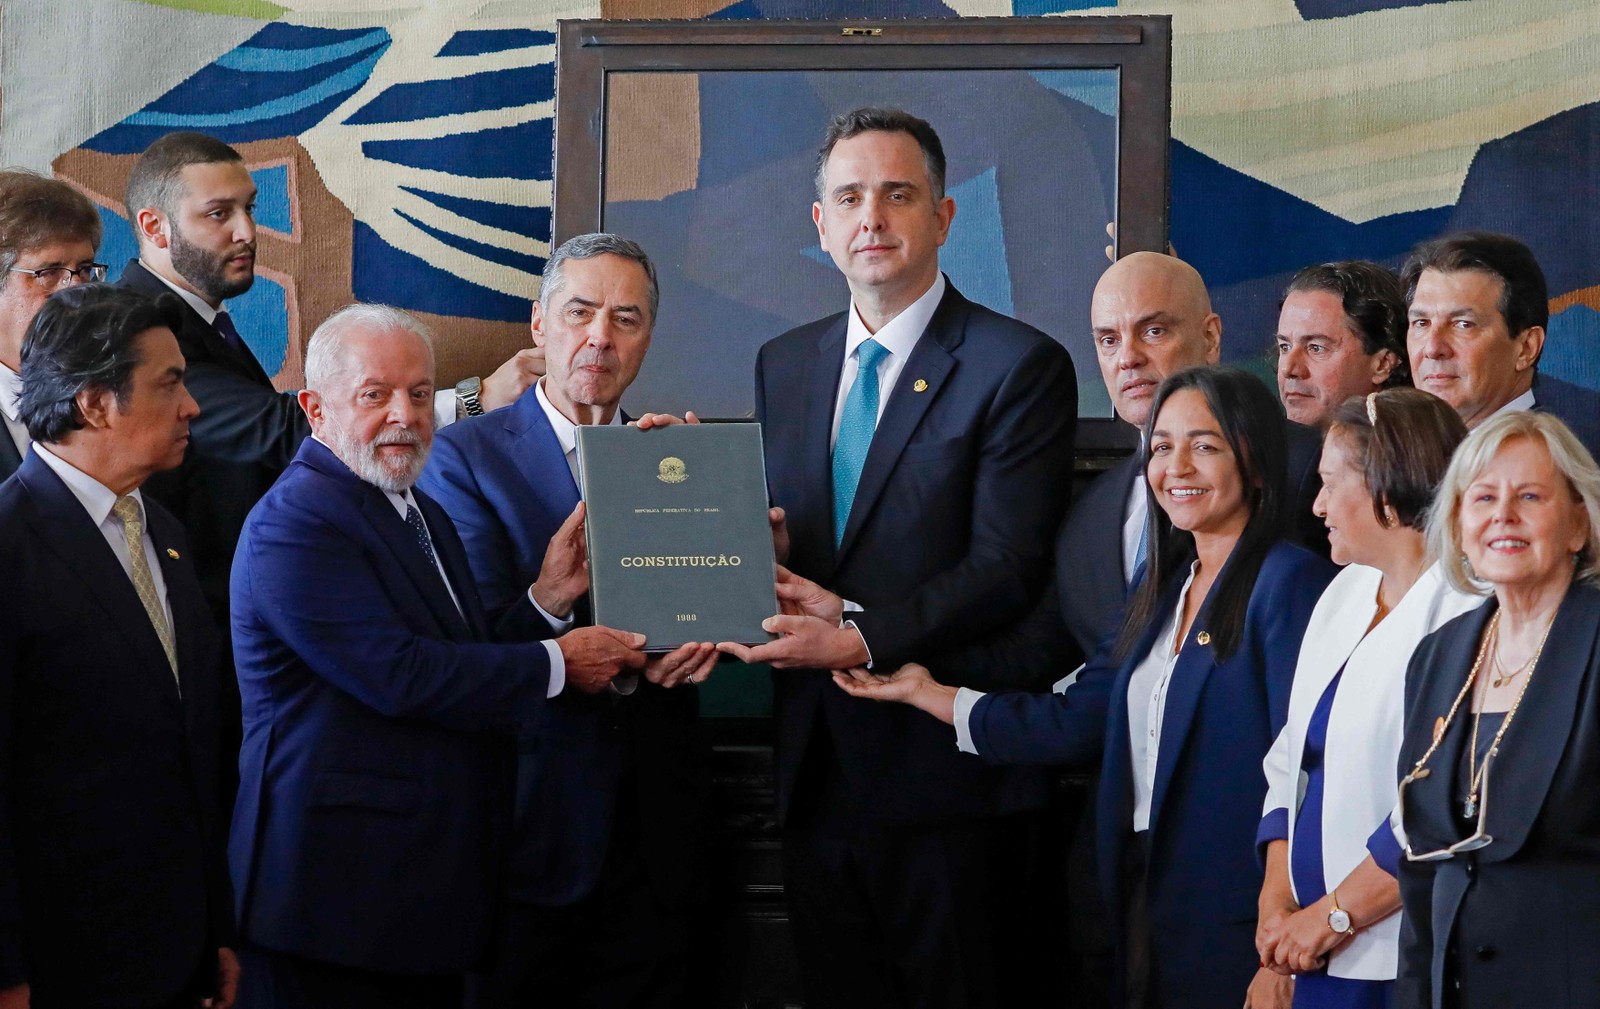 Cerimônia de 1 ano do 8 de janeiro reúne Lula, Barroso, Pacheco, Moraes, e outros membros do Executivo e Judiciário — Foto: AFP/Sergio Lima